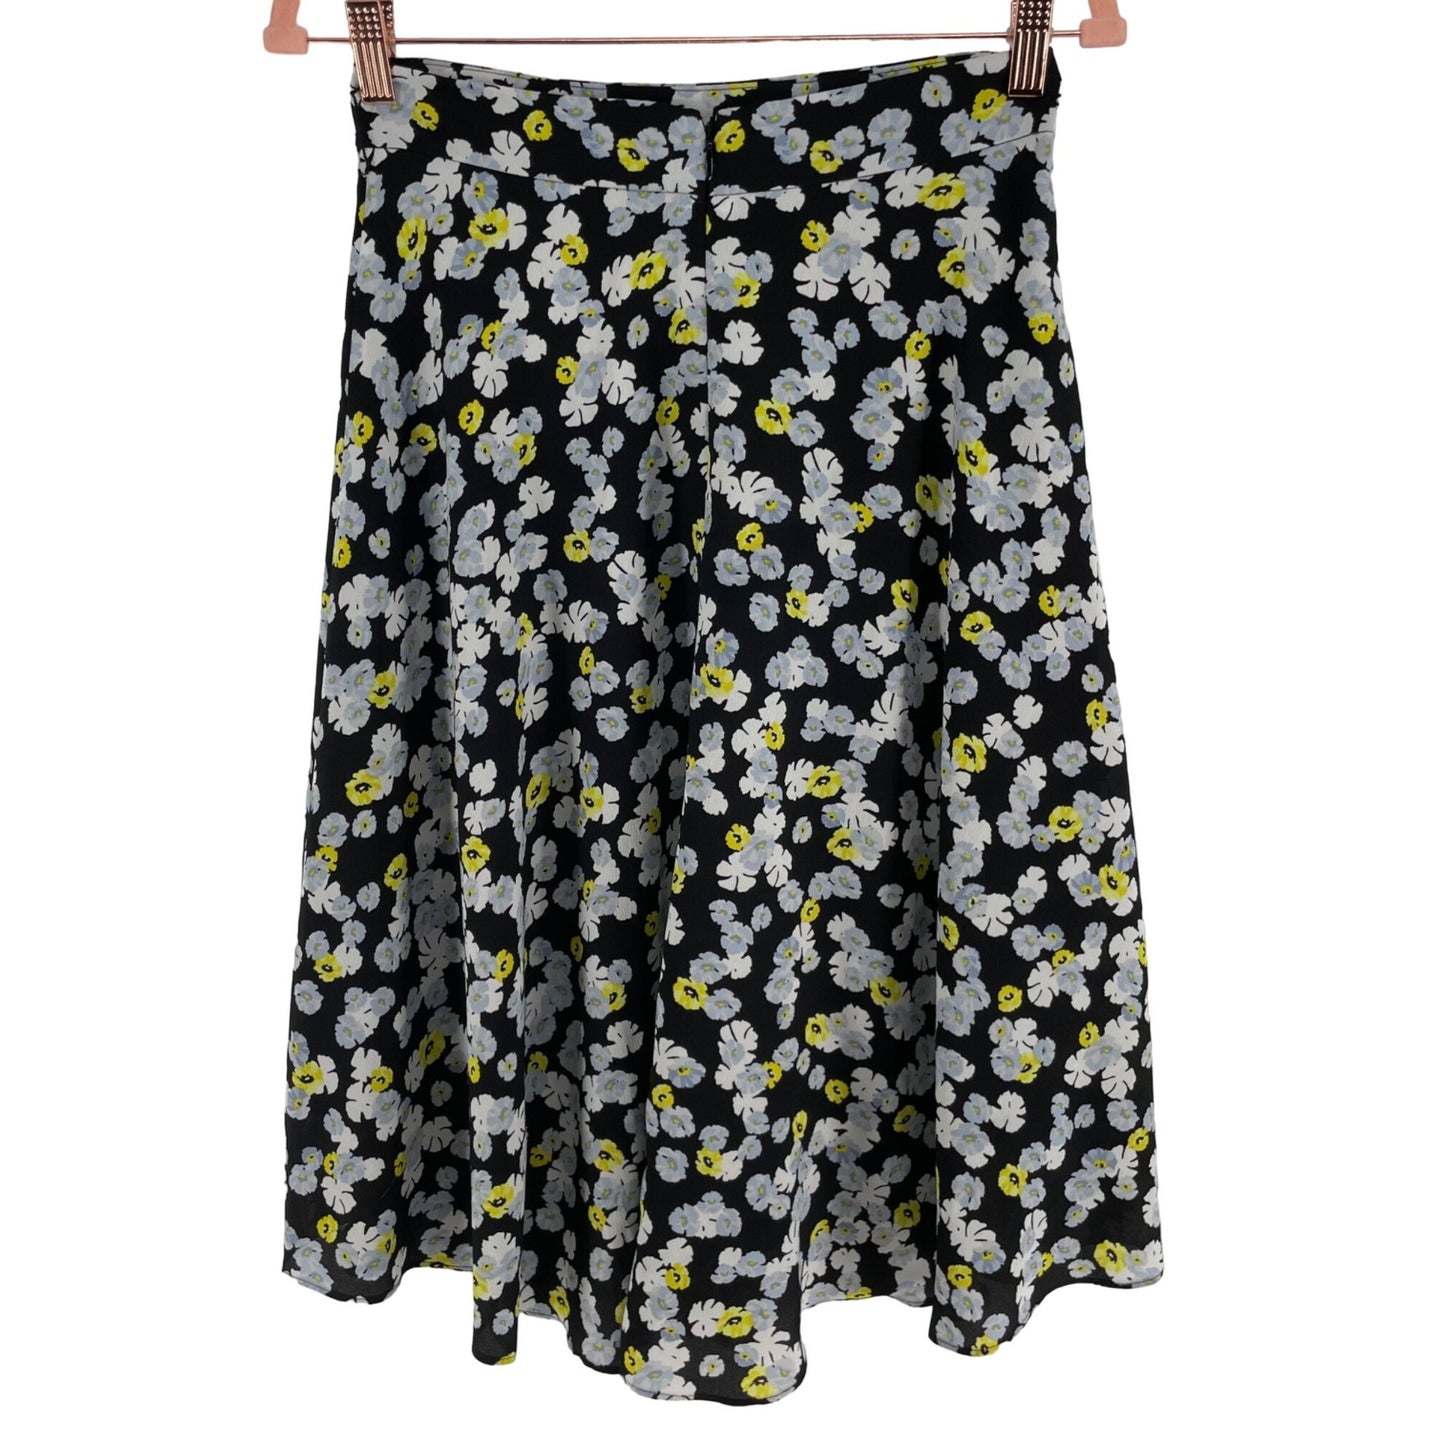 Ann Taylor Petite Women's Size 2P Blue/Yellow/White/Black Floral A-Line Midi Skirt